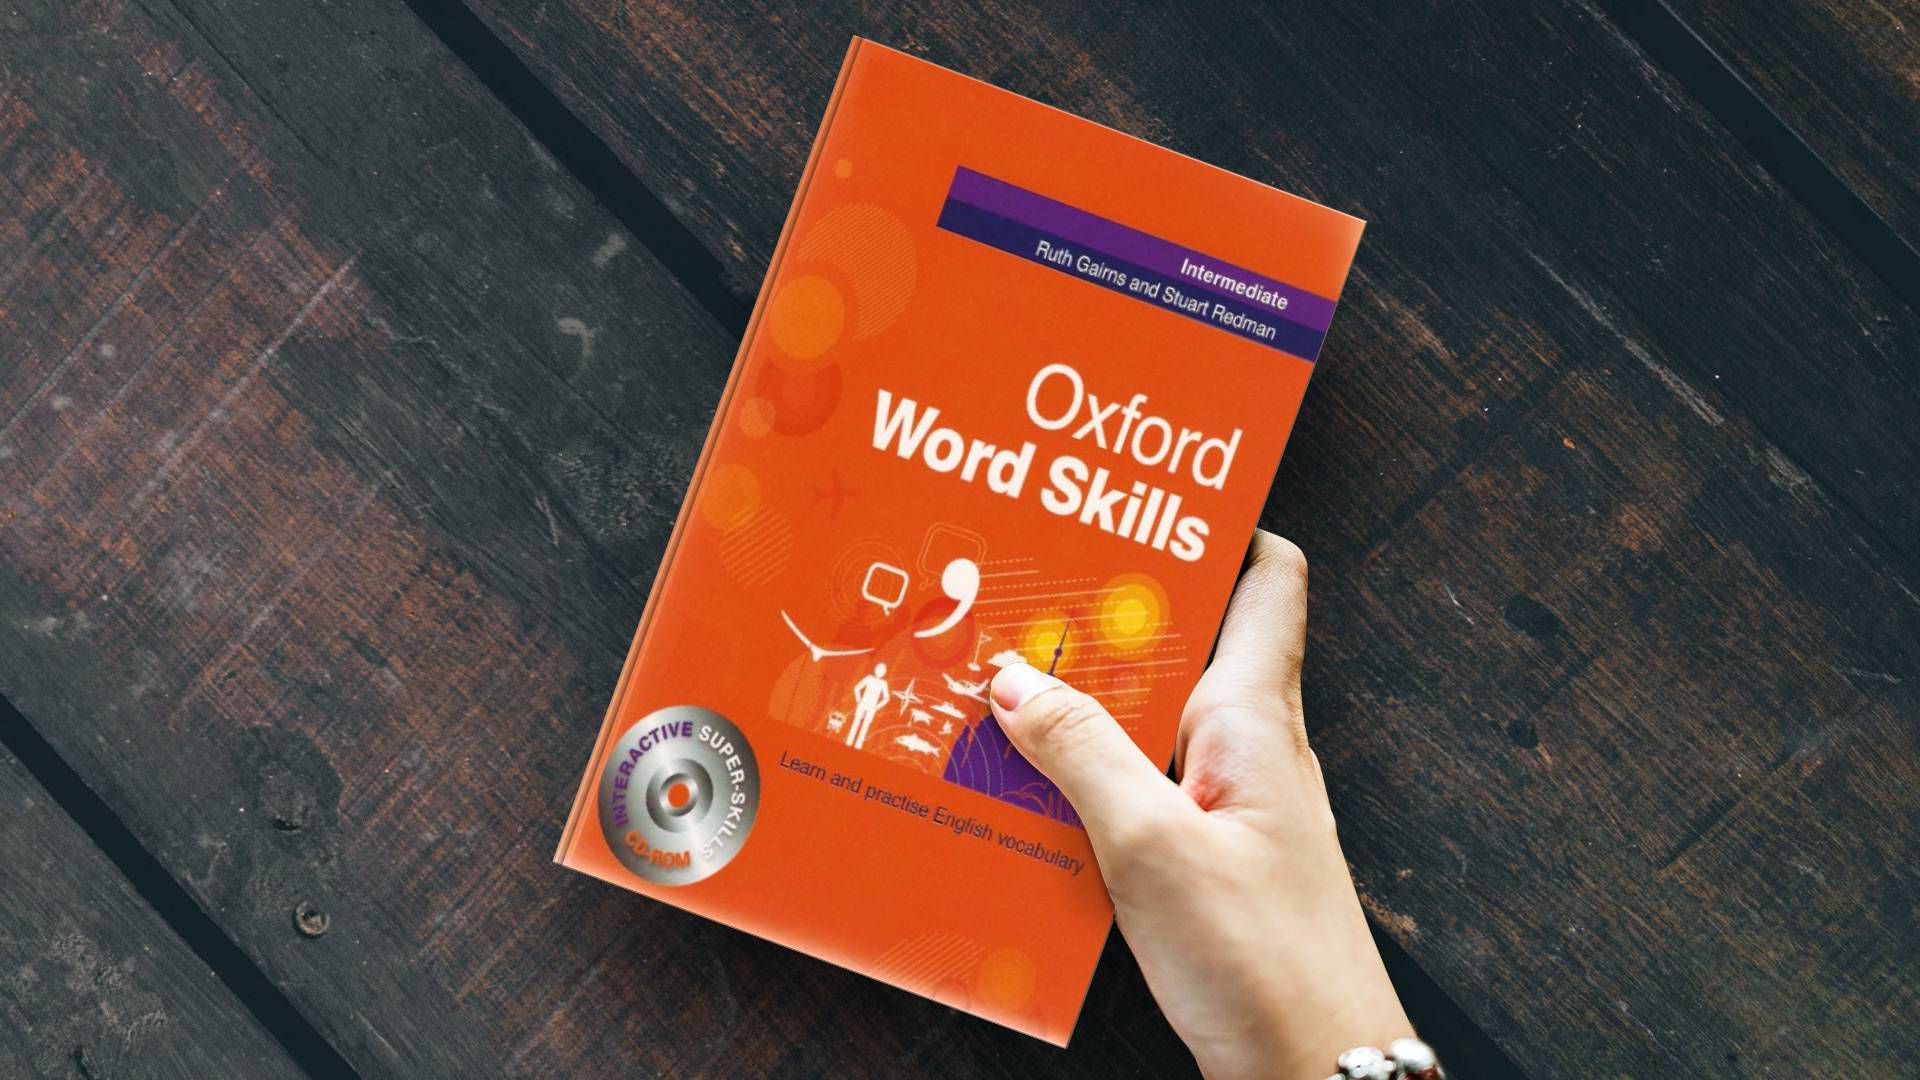 Oxford Word Skills intermediate